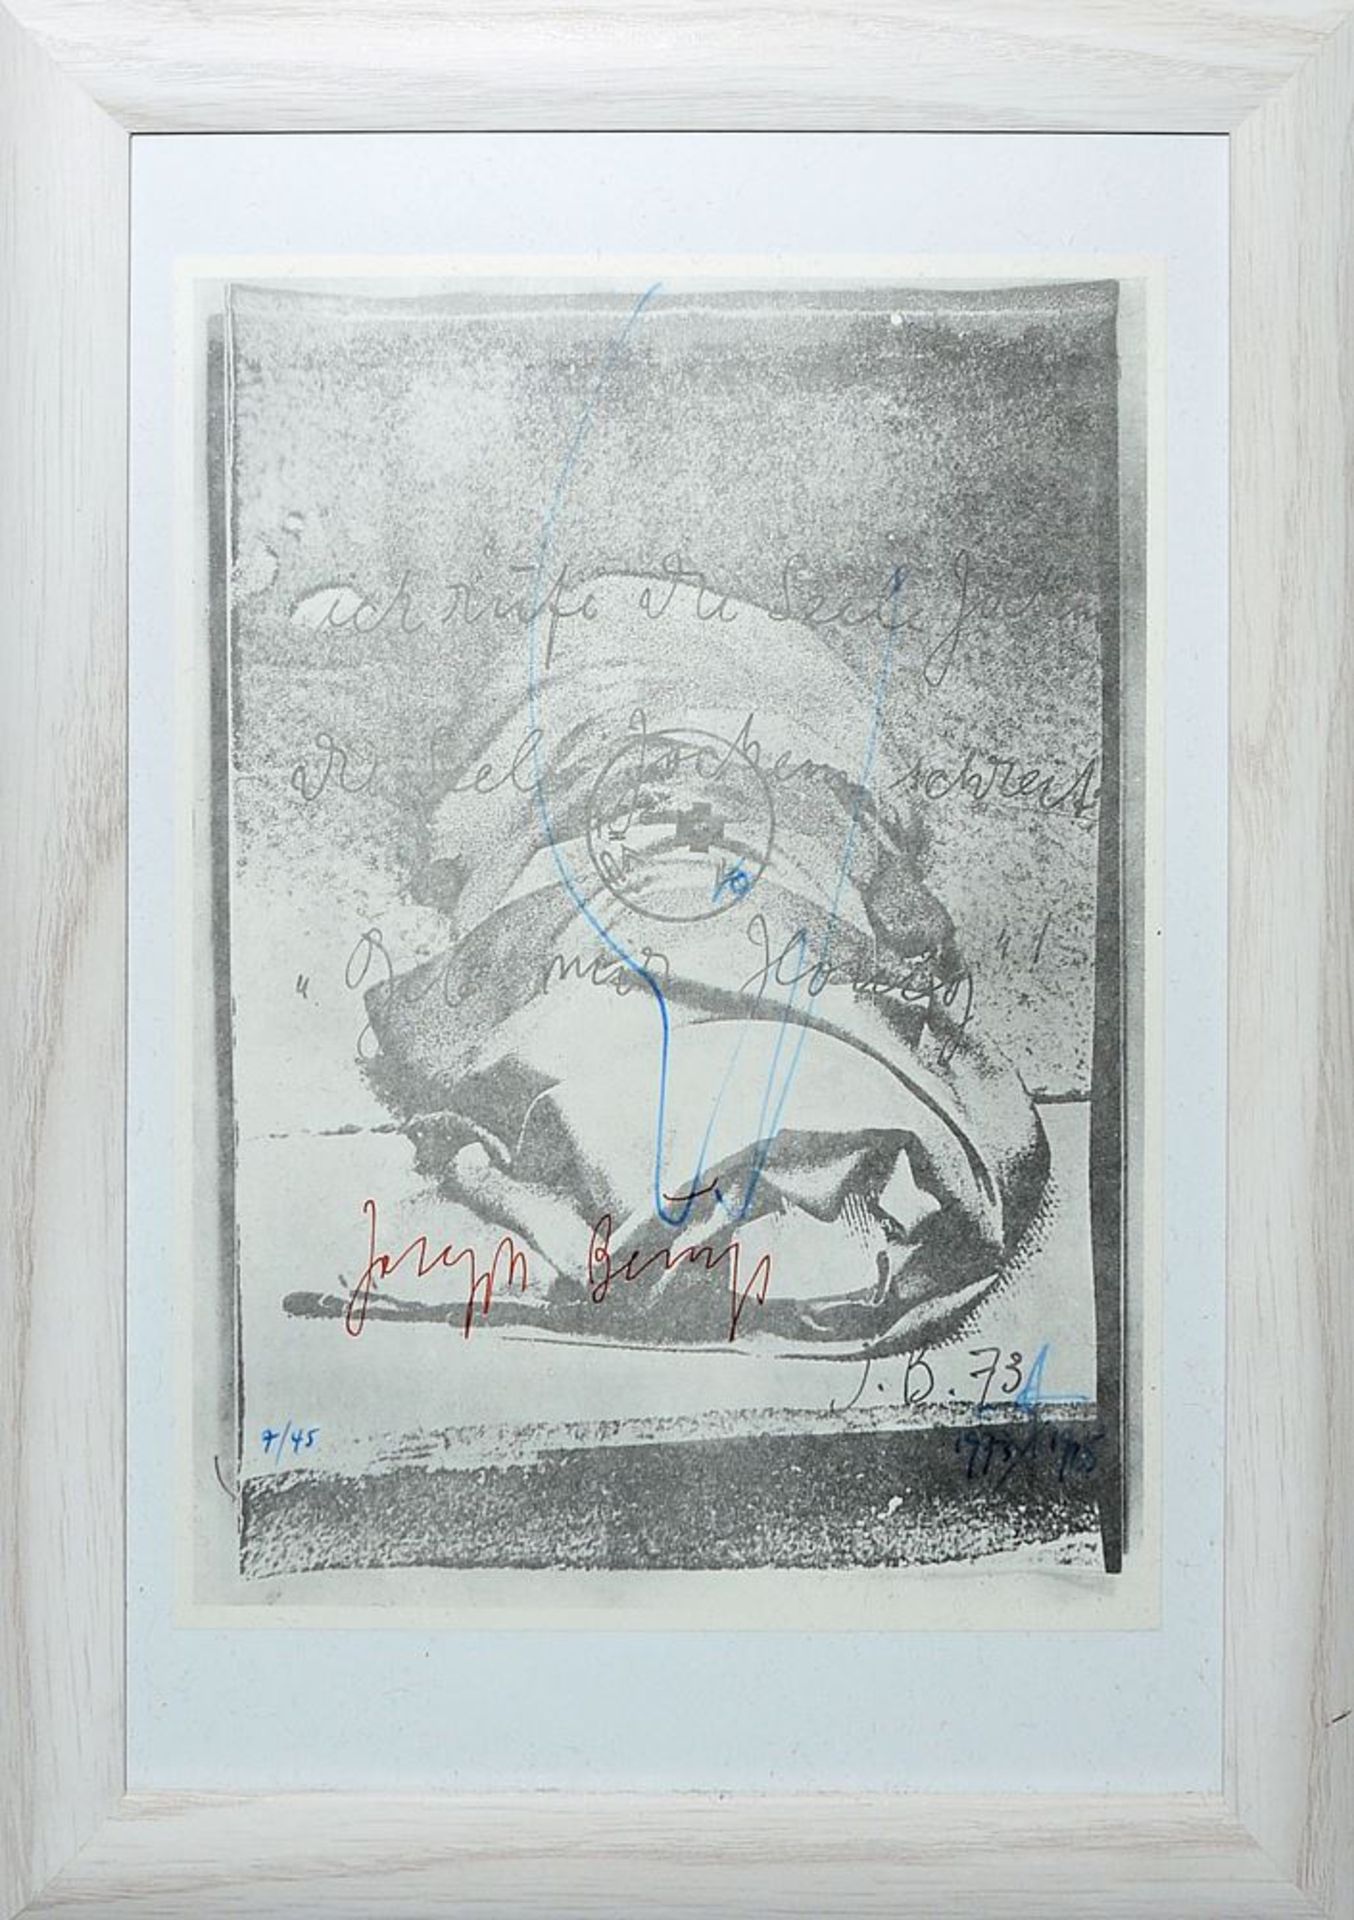 Joseph Beuys, Der Vogel, signierte Offsetlithographie mit Vogelzeichnung von Jonas Hafner, 1973/